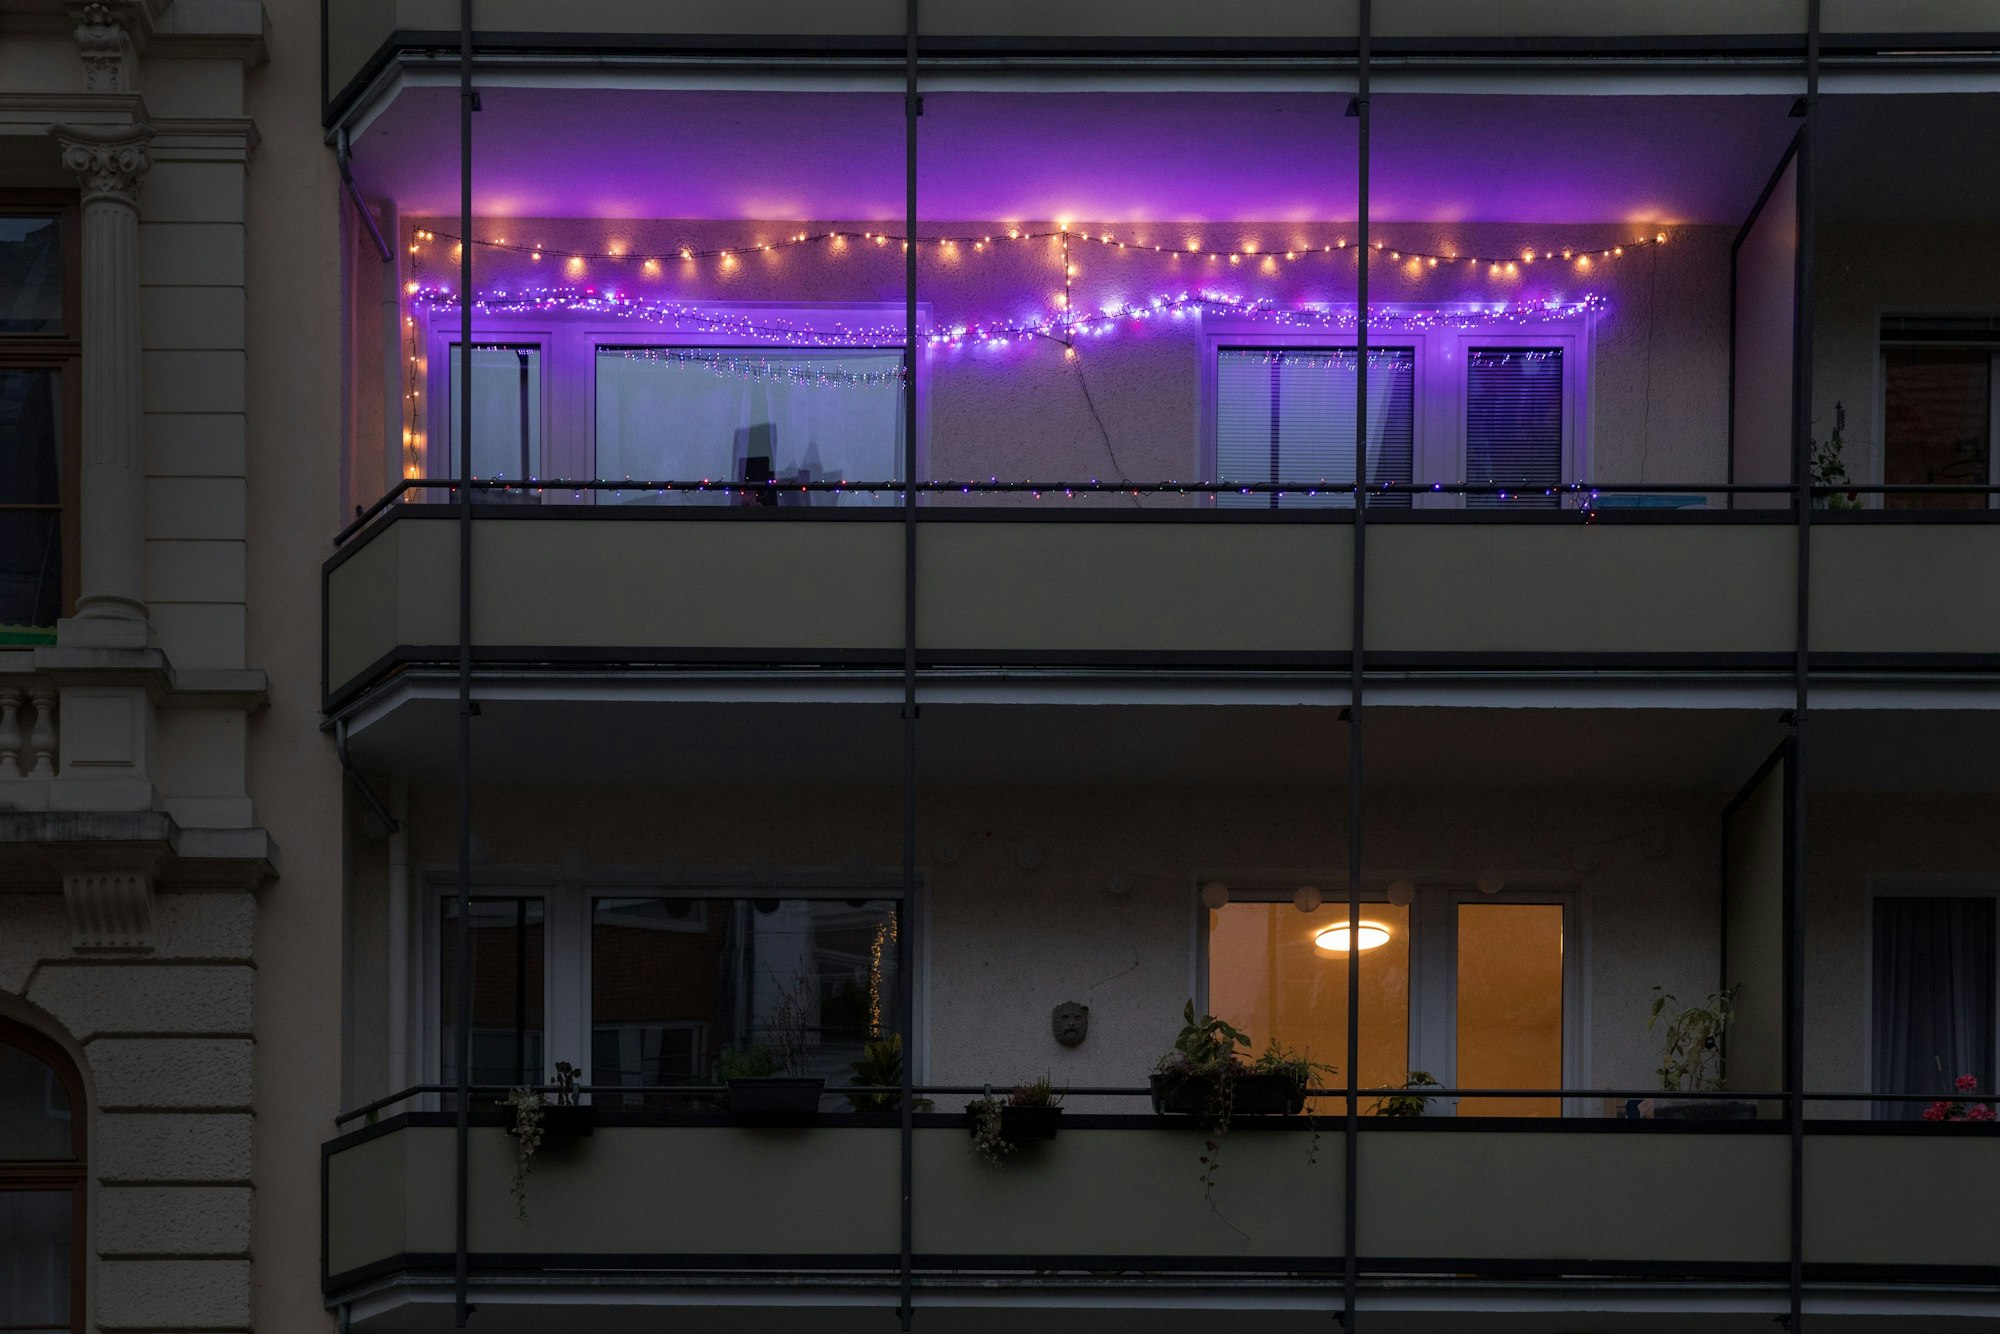 Zwei Lichterketten hängen an einem Balkon. Eine leuchtet in warmweißer Farbe, die zweite in violett.